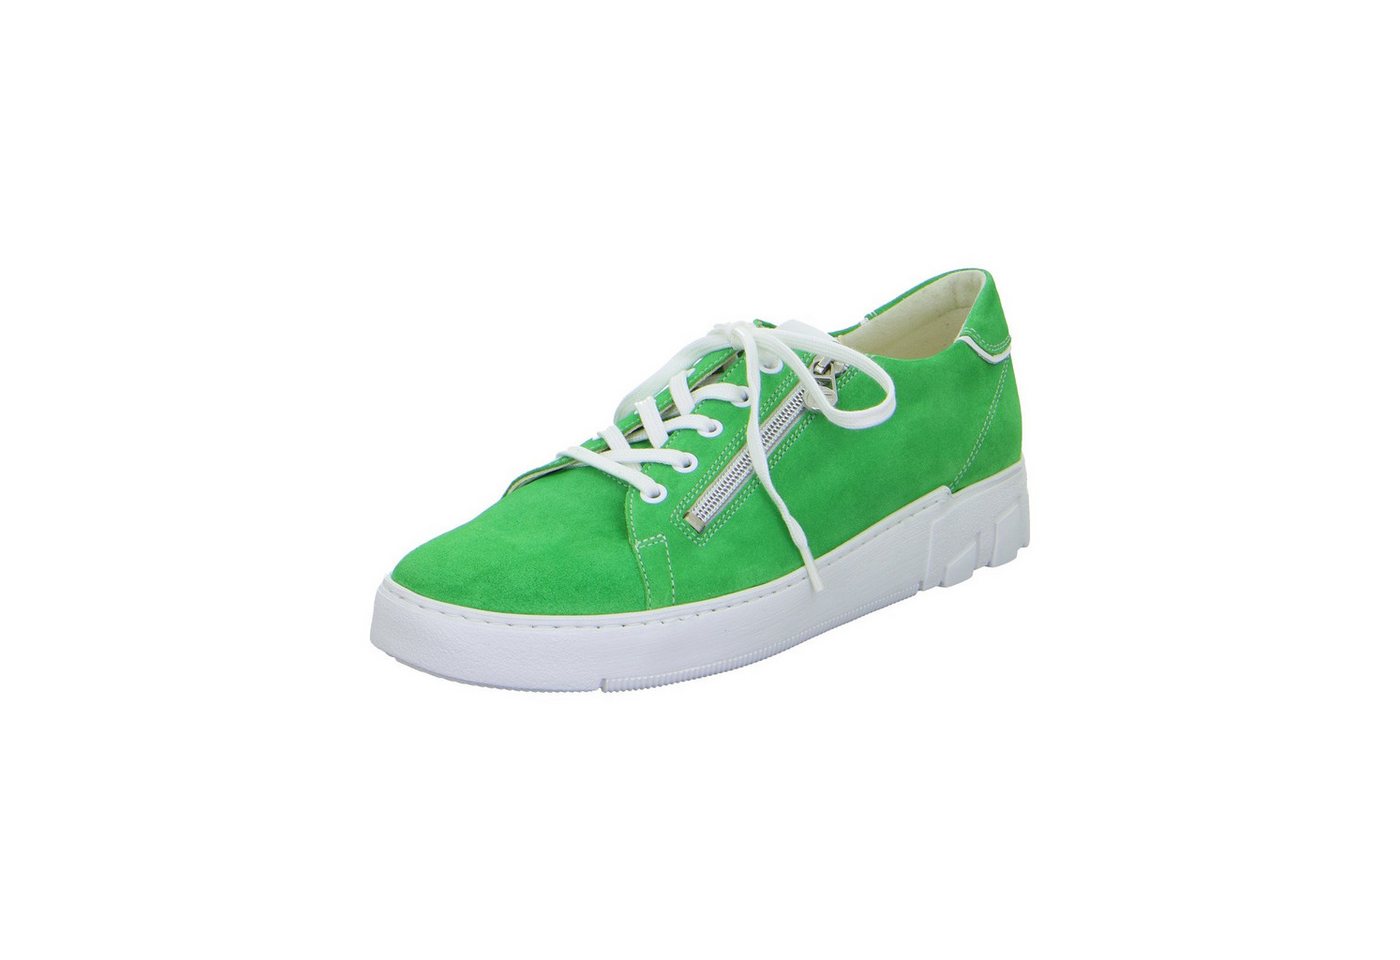 Ganter Giulietta - Damen Schuhe Sneaker grün von Ganter